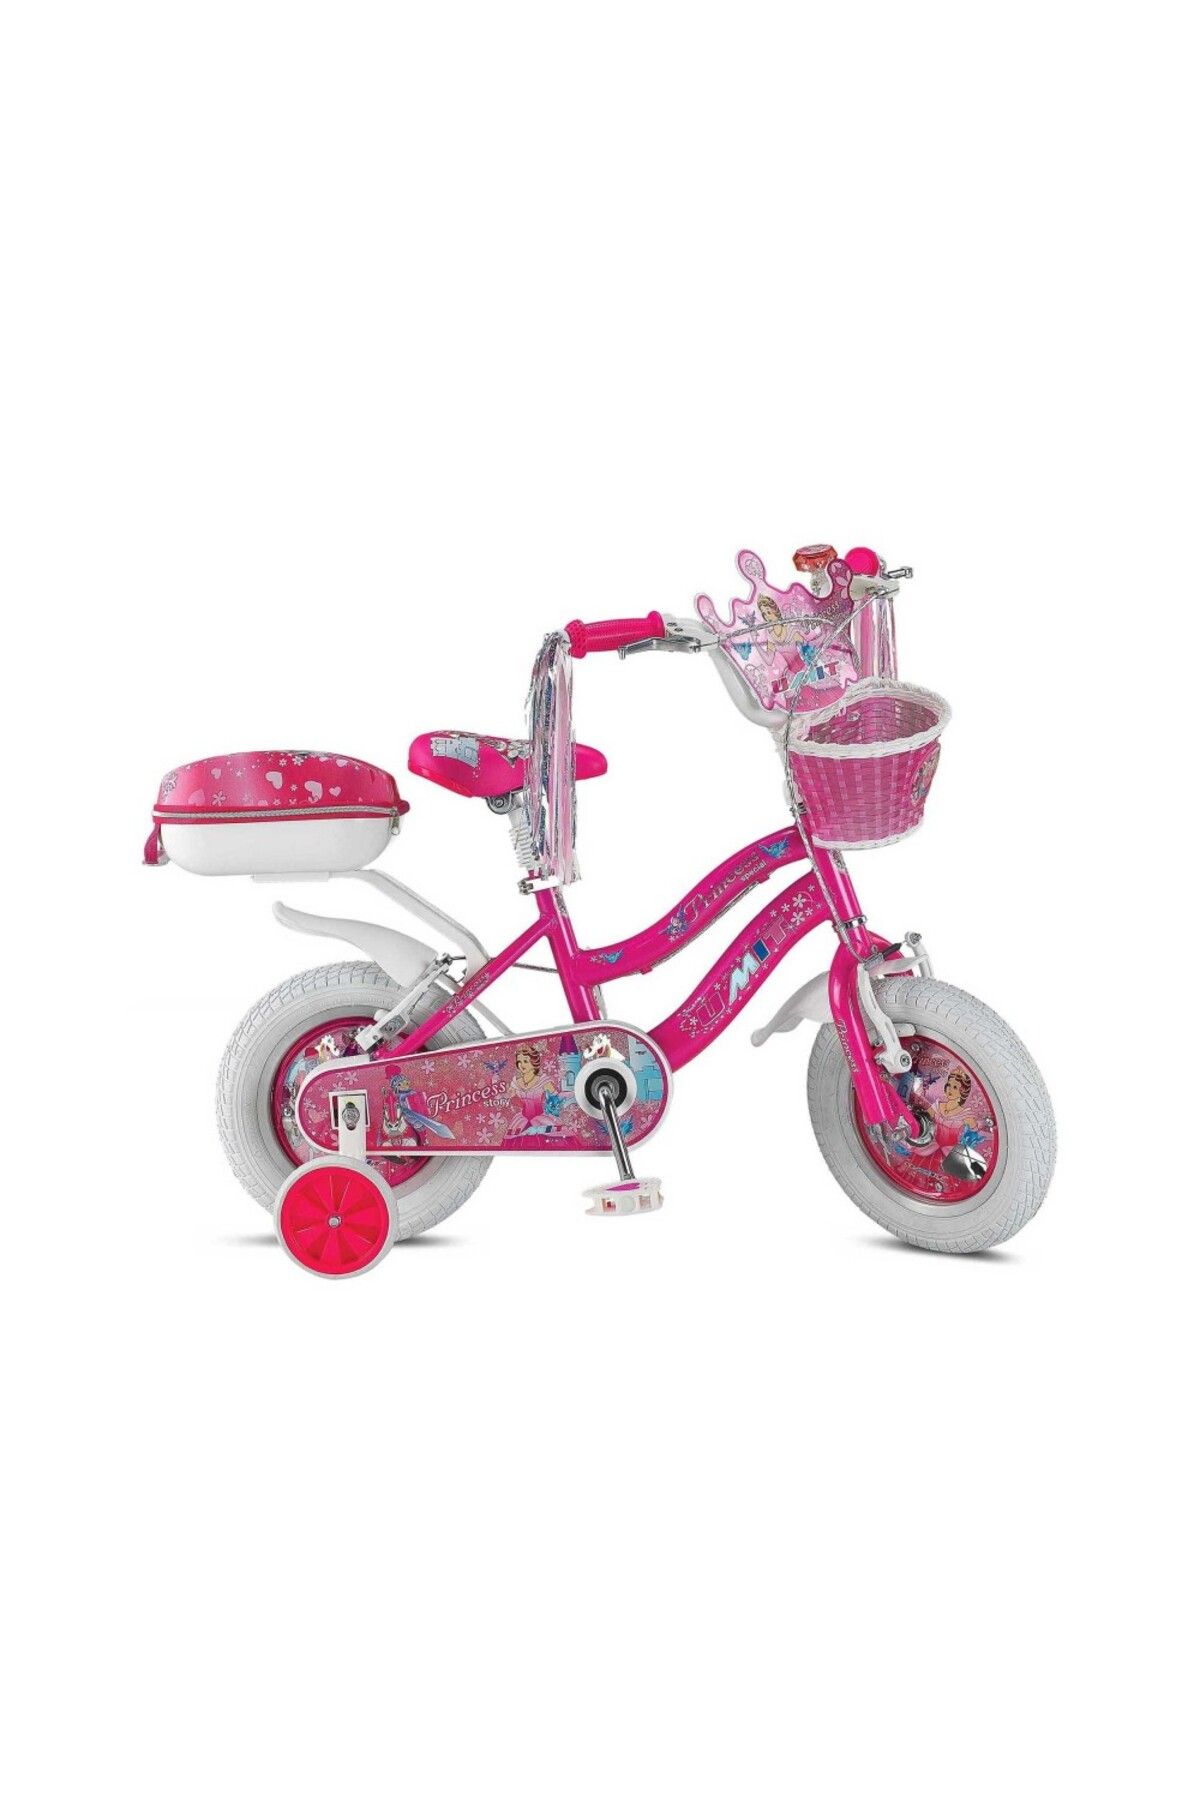 Ümit Bisiklet Princess 12 Jant 1-V VB Kız Çocuk Bisikleti